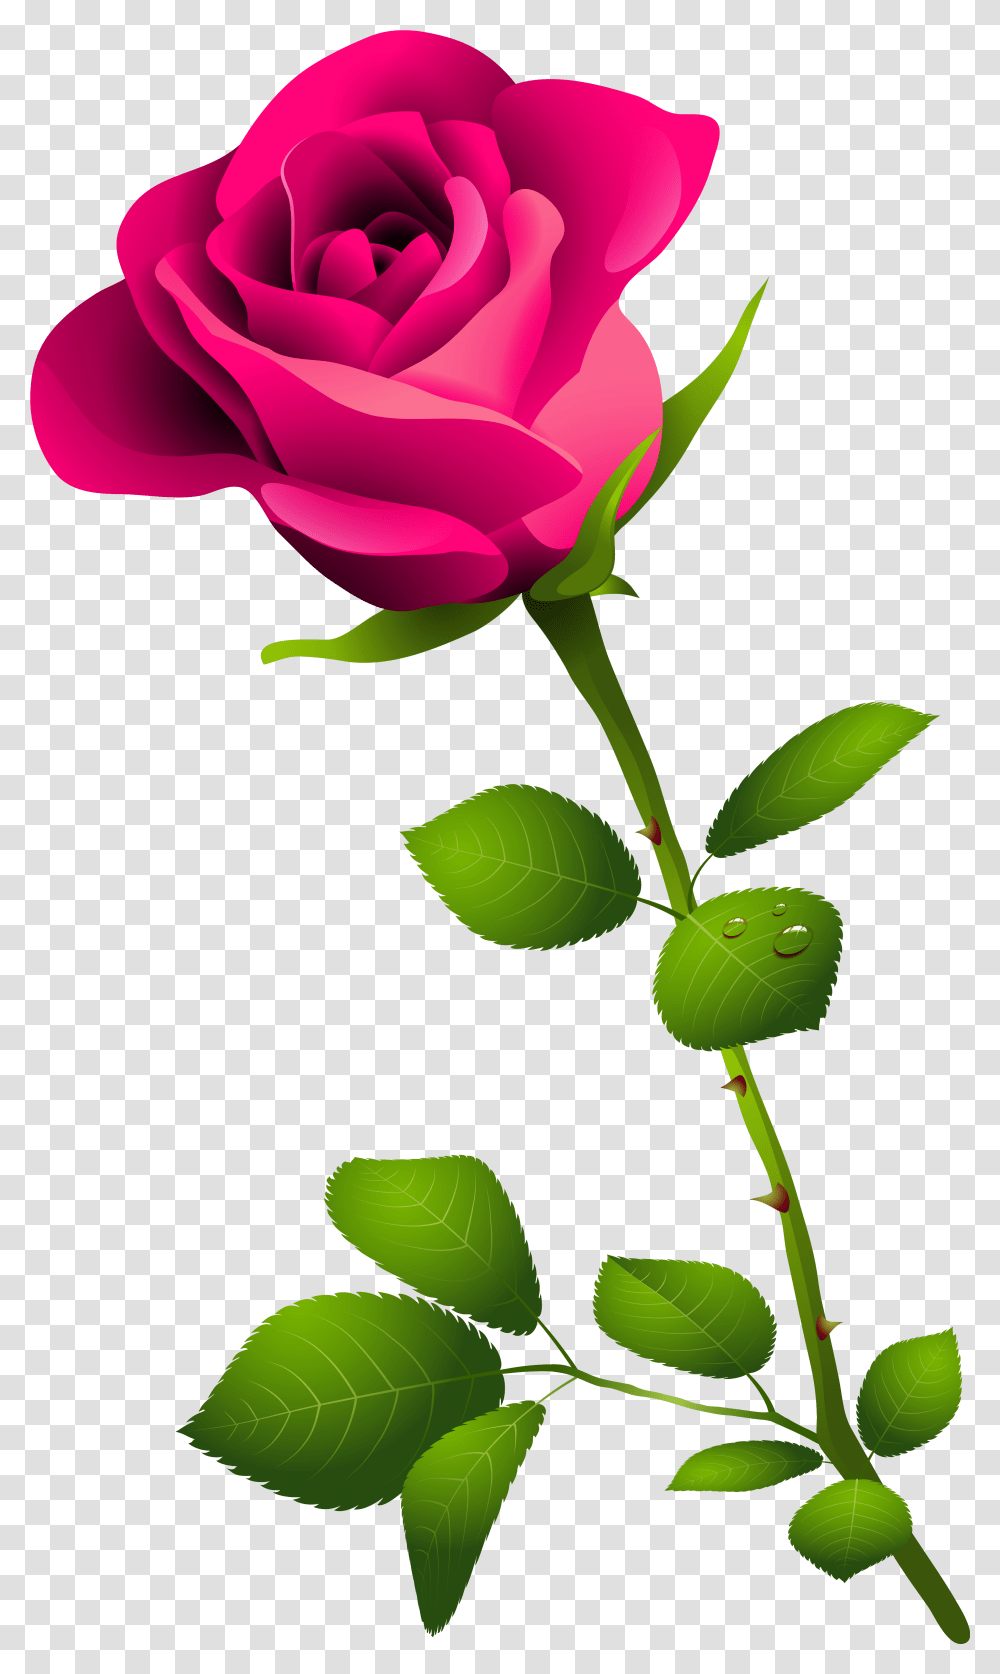 Pink Rose With Stem, Plant, Flower, Blossom, Leaf Transparent Png